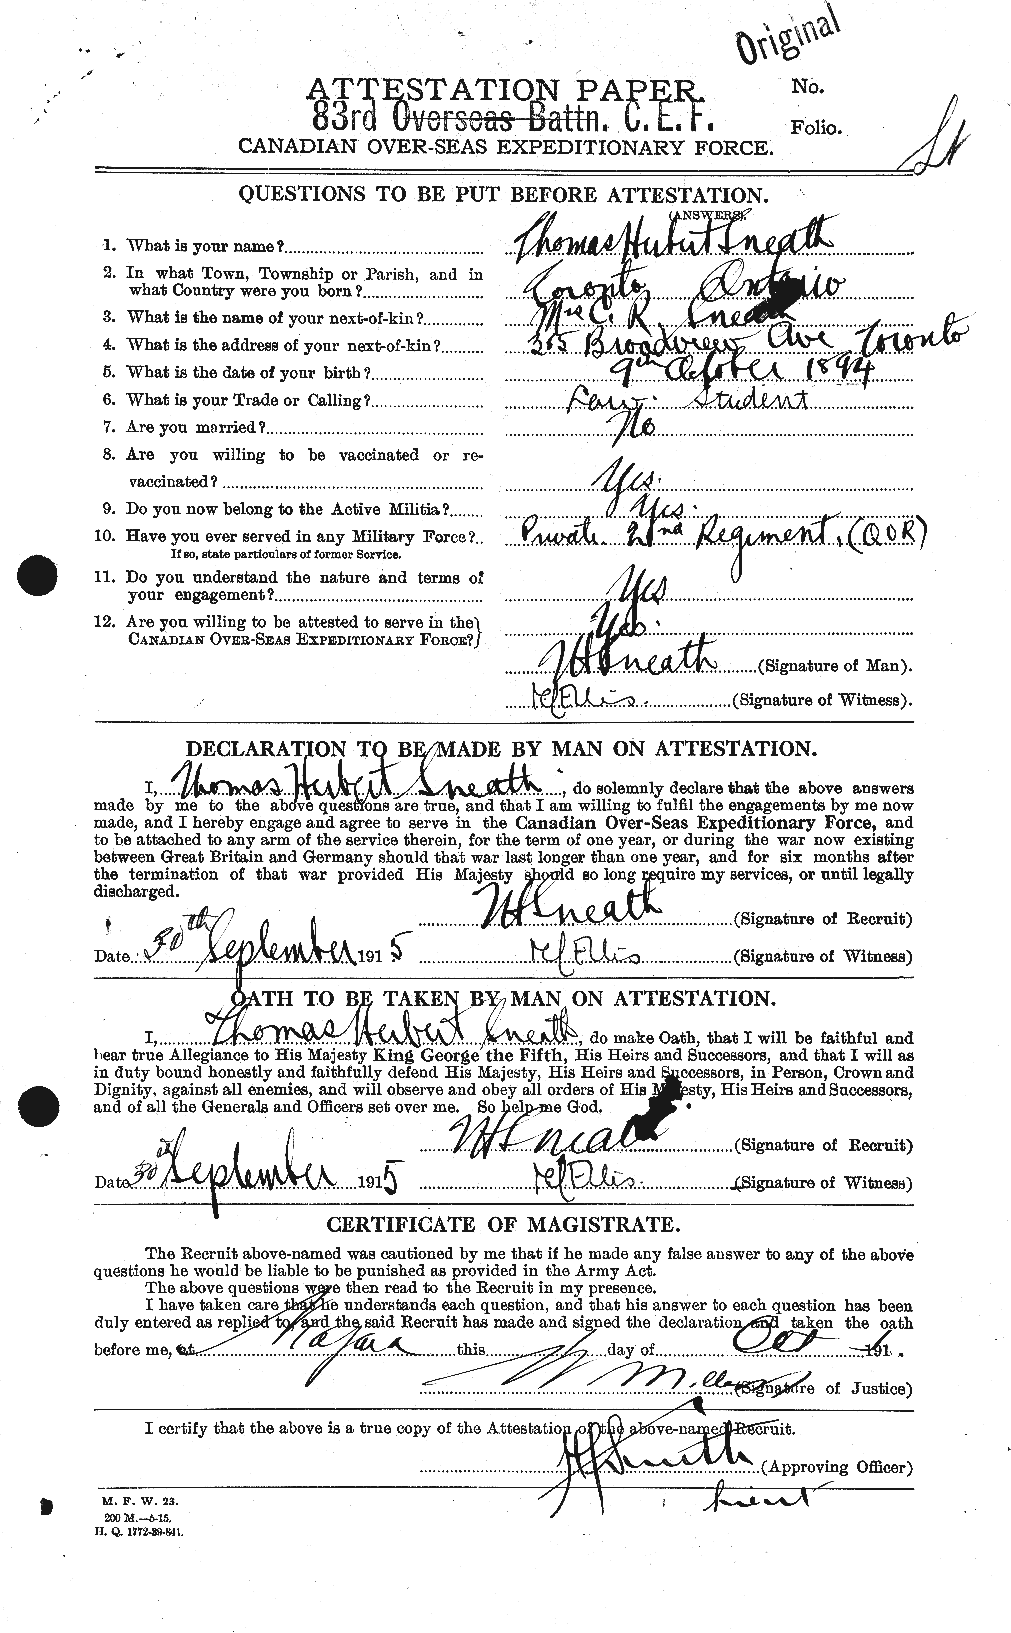 Dossiers du Personnel de la Première Guerre mondiale - CEC 111153a